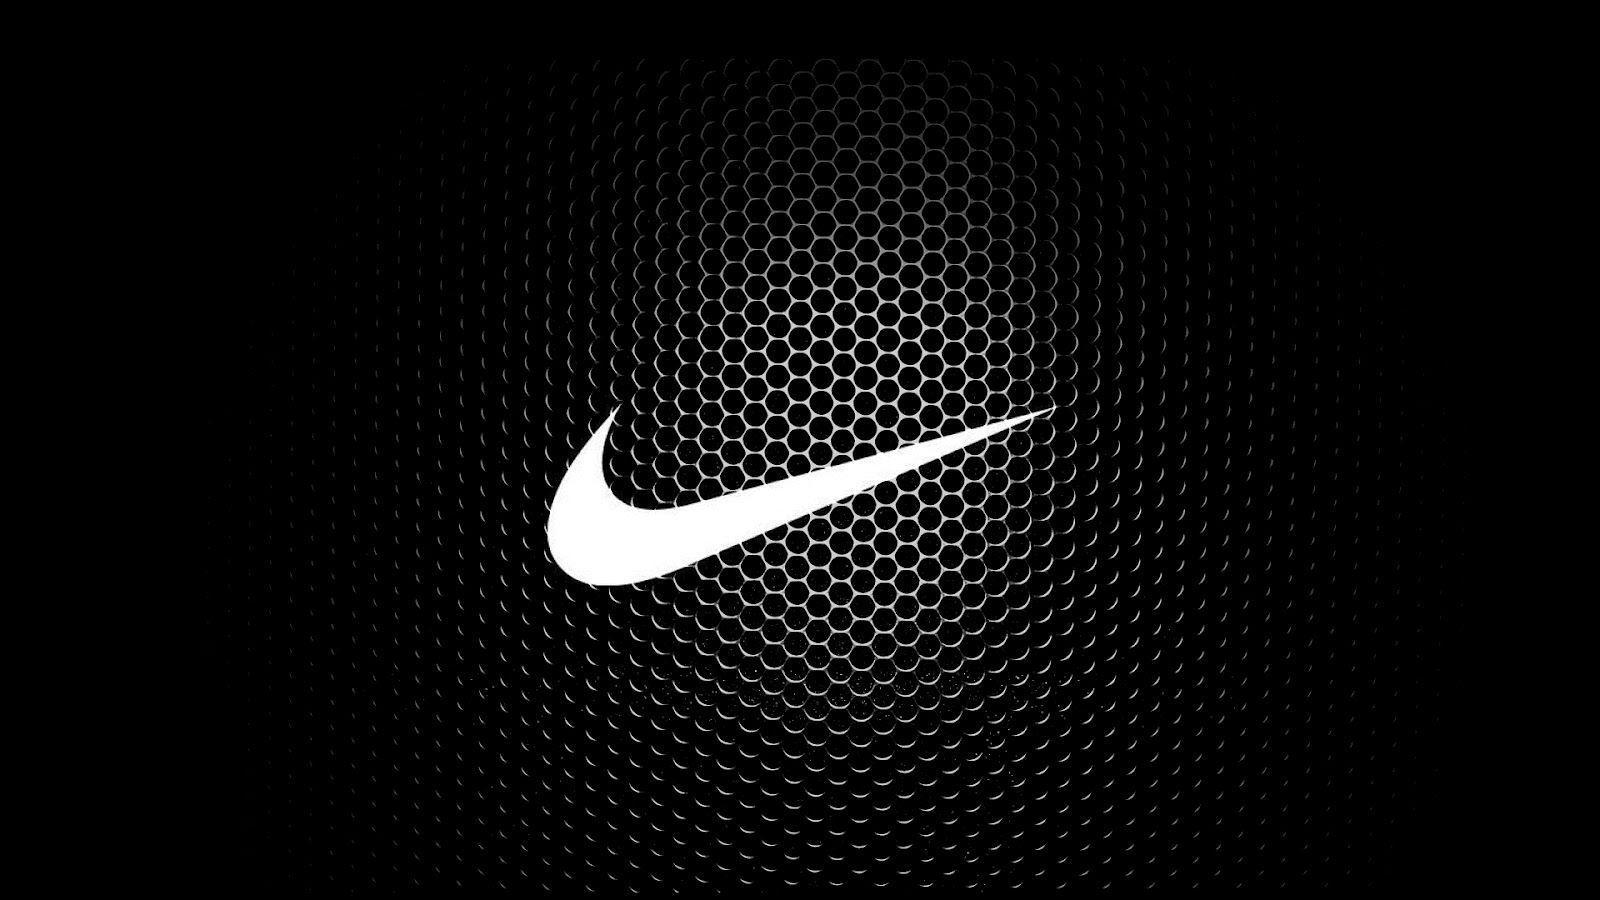 Trang trí màn hình laptop của bạn với những hình ảnh Nike đầy phong cách và sáng tạo nhất. Sfondi Laptop Nike là để đem lại cho bạn những khoảnh khắc cực kỳ ý nghĩa với thương hiệu Nike danh tiếng. Đừng bỏ lỡ cơ hội để \